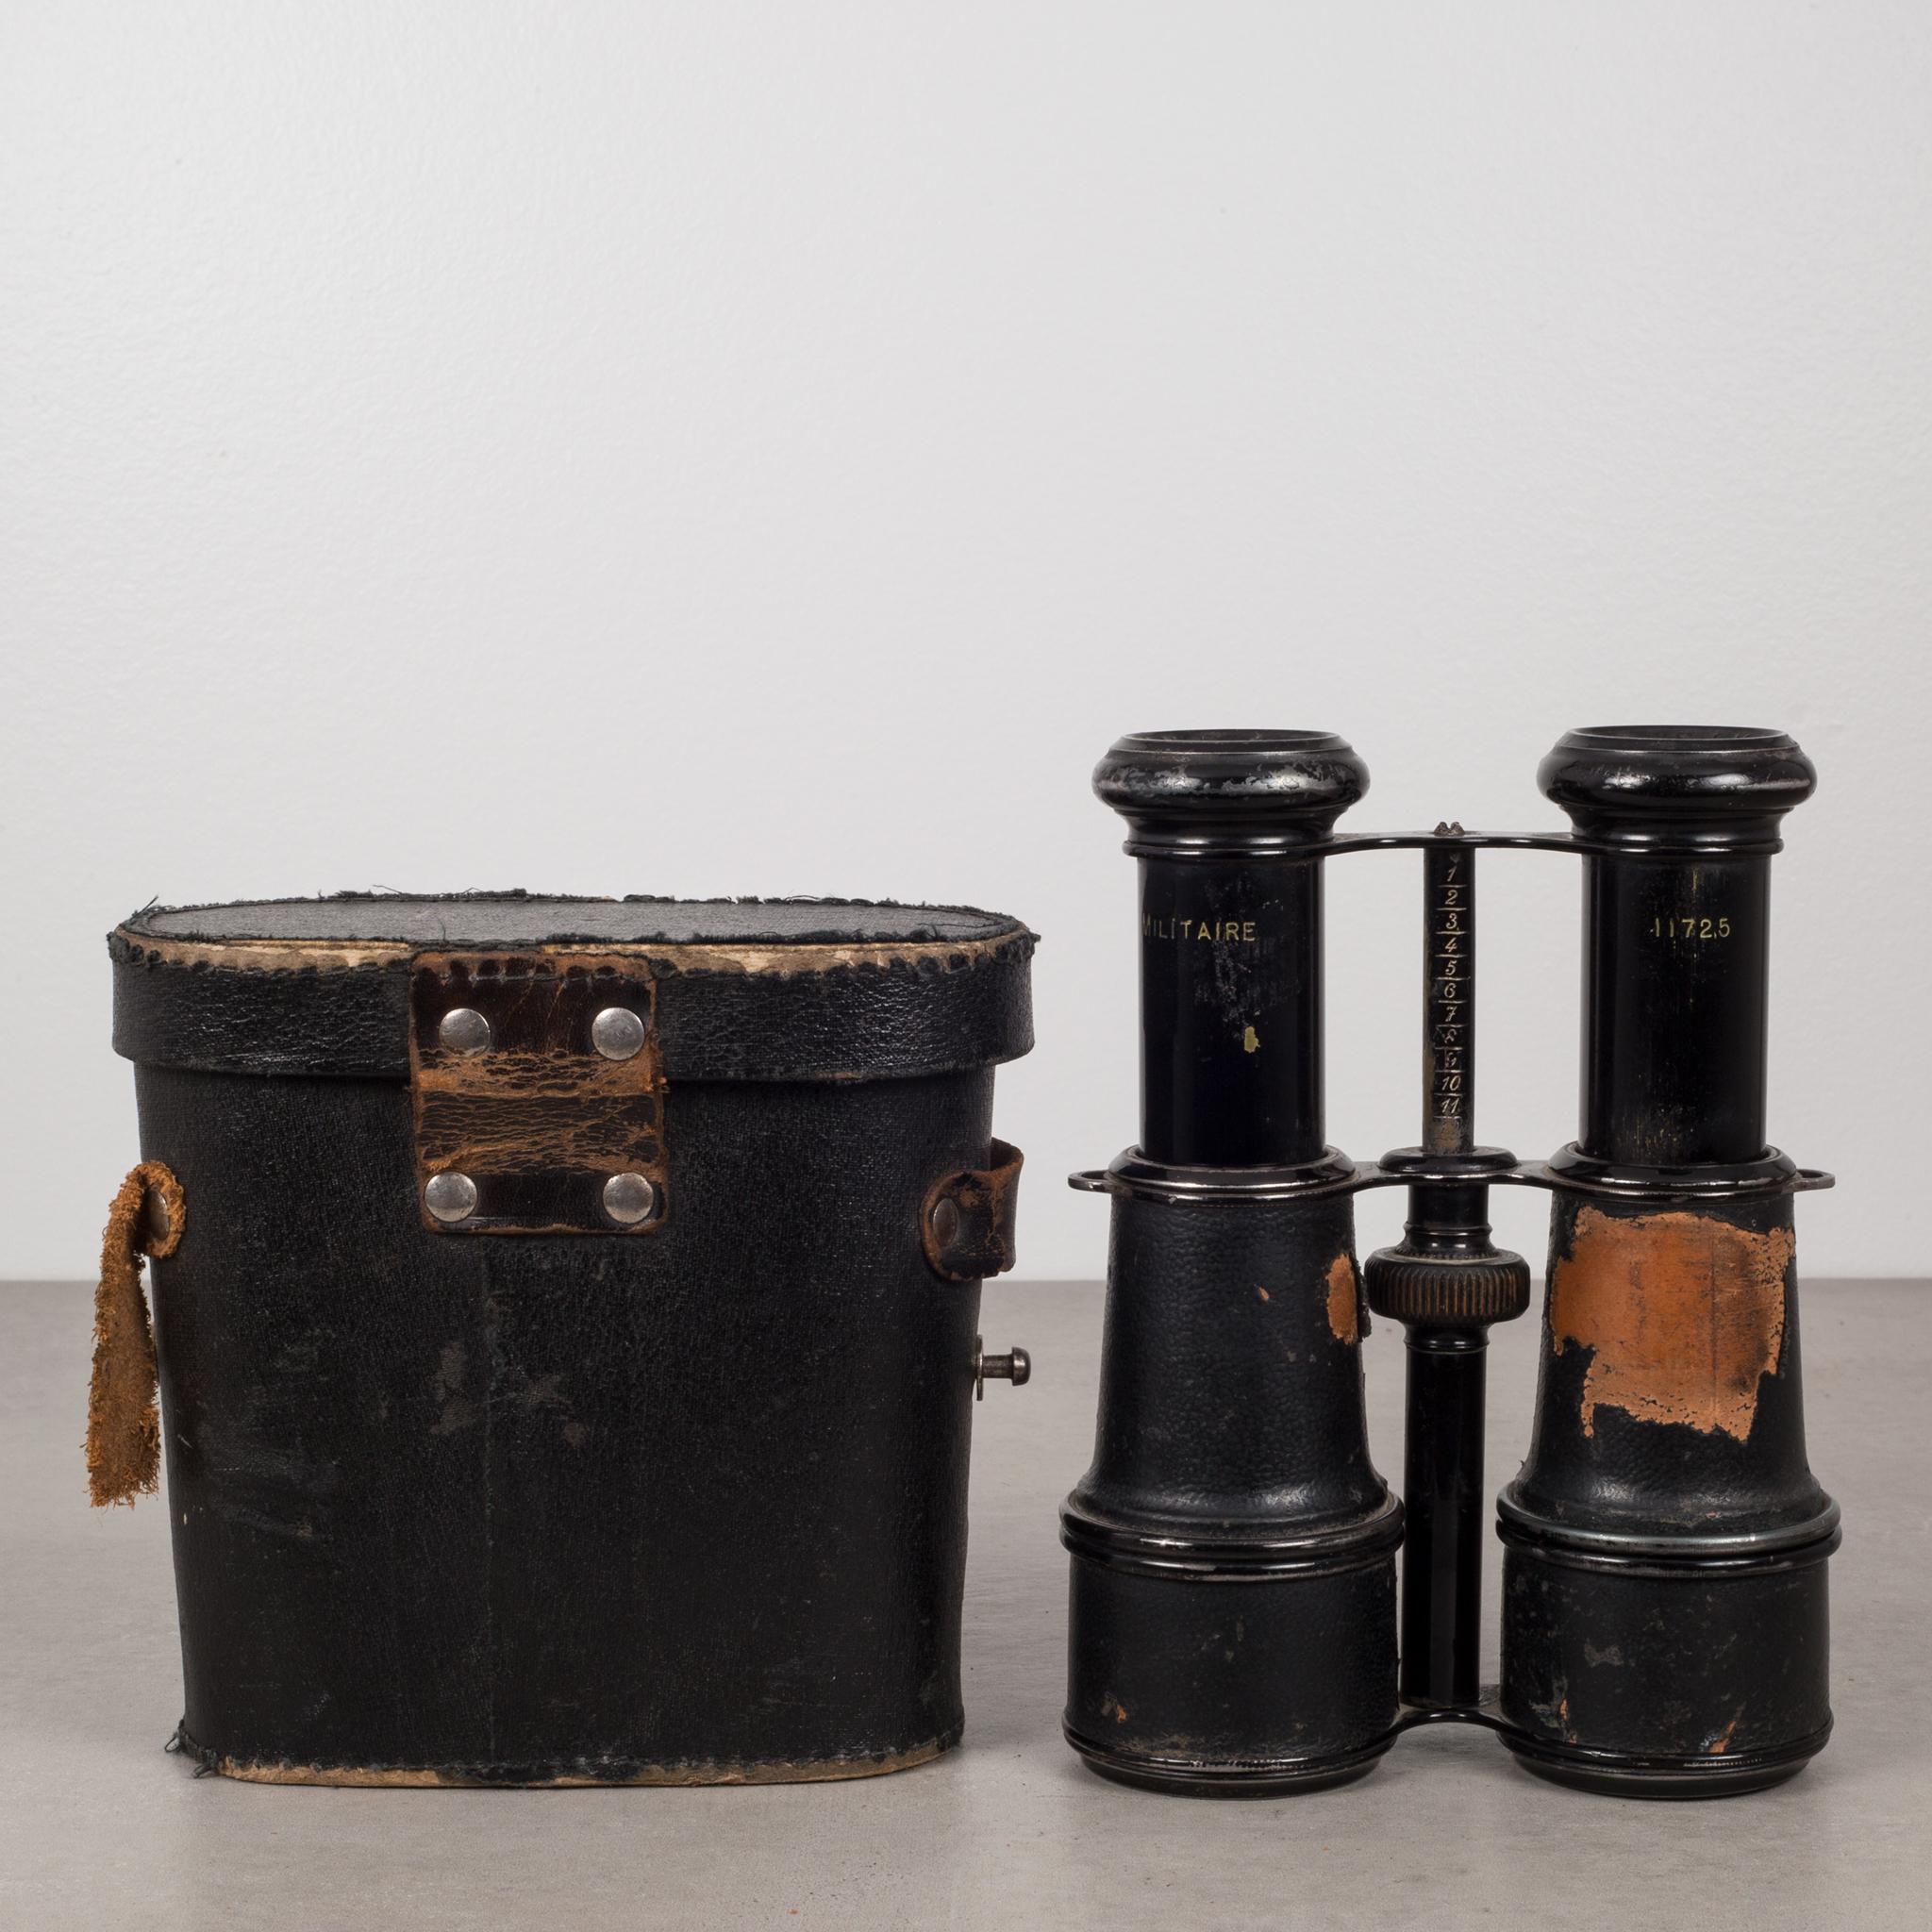 19th century binoculars